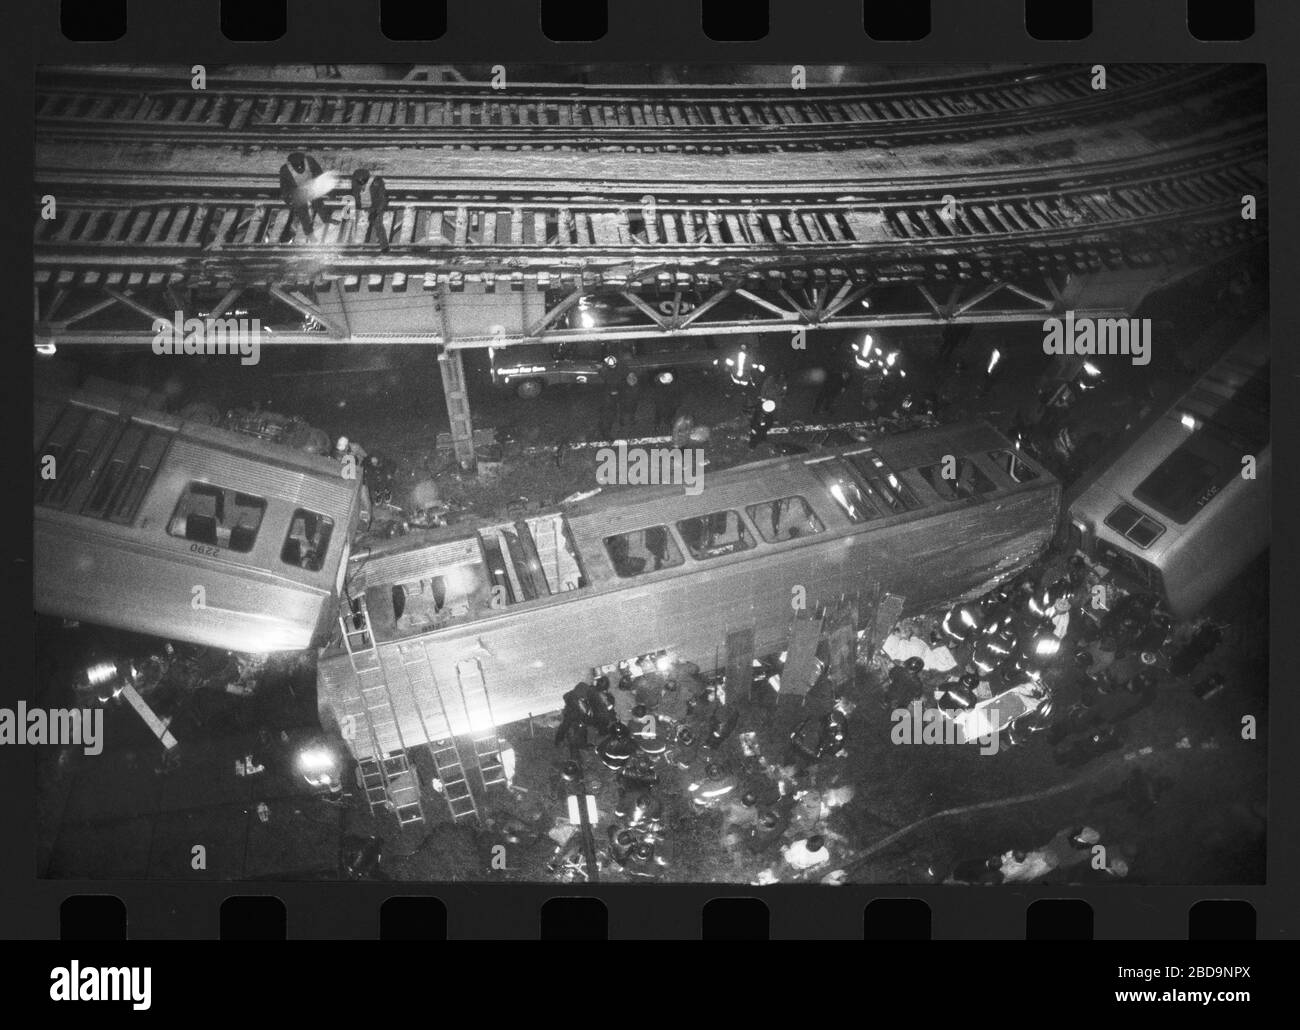 Elevated El train derailment a Chicago, Illinois il Venerdì sera 4 febbraio 1977. Le auto in treno cadono al livello della strada del Chicago Loop a causa di una collisione all'incrocio tra Lake Street e Wabash Avenue. Immagine da 35 mm negativo. Foto Stock